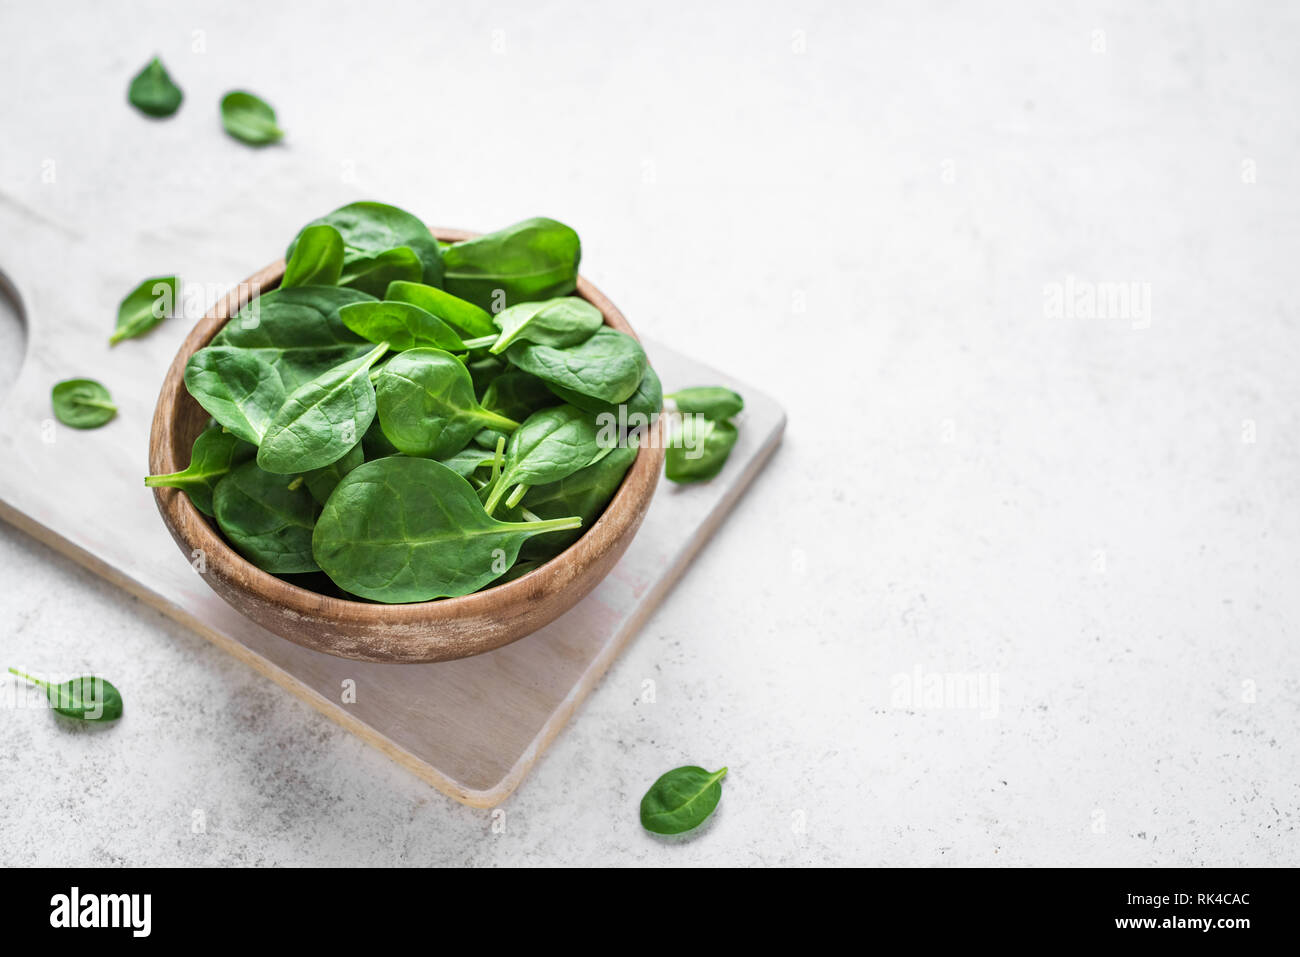 Baby Spinatblätter in der Schüssel auf weißem Hintergrund, kopieren. Sauber Essen, Detox, Diät Lebensmittel Zutat - grün Bio Spinat. Stockfoto